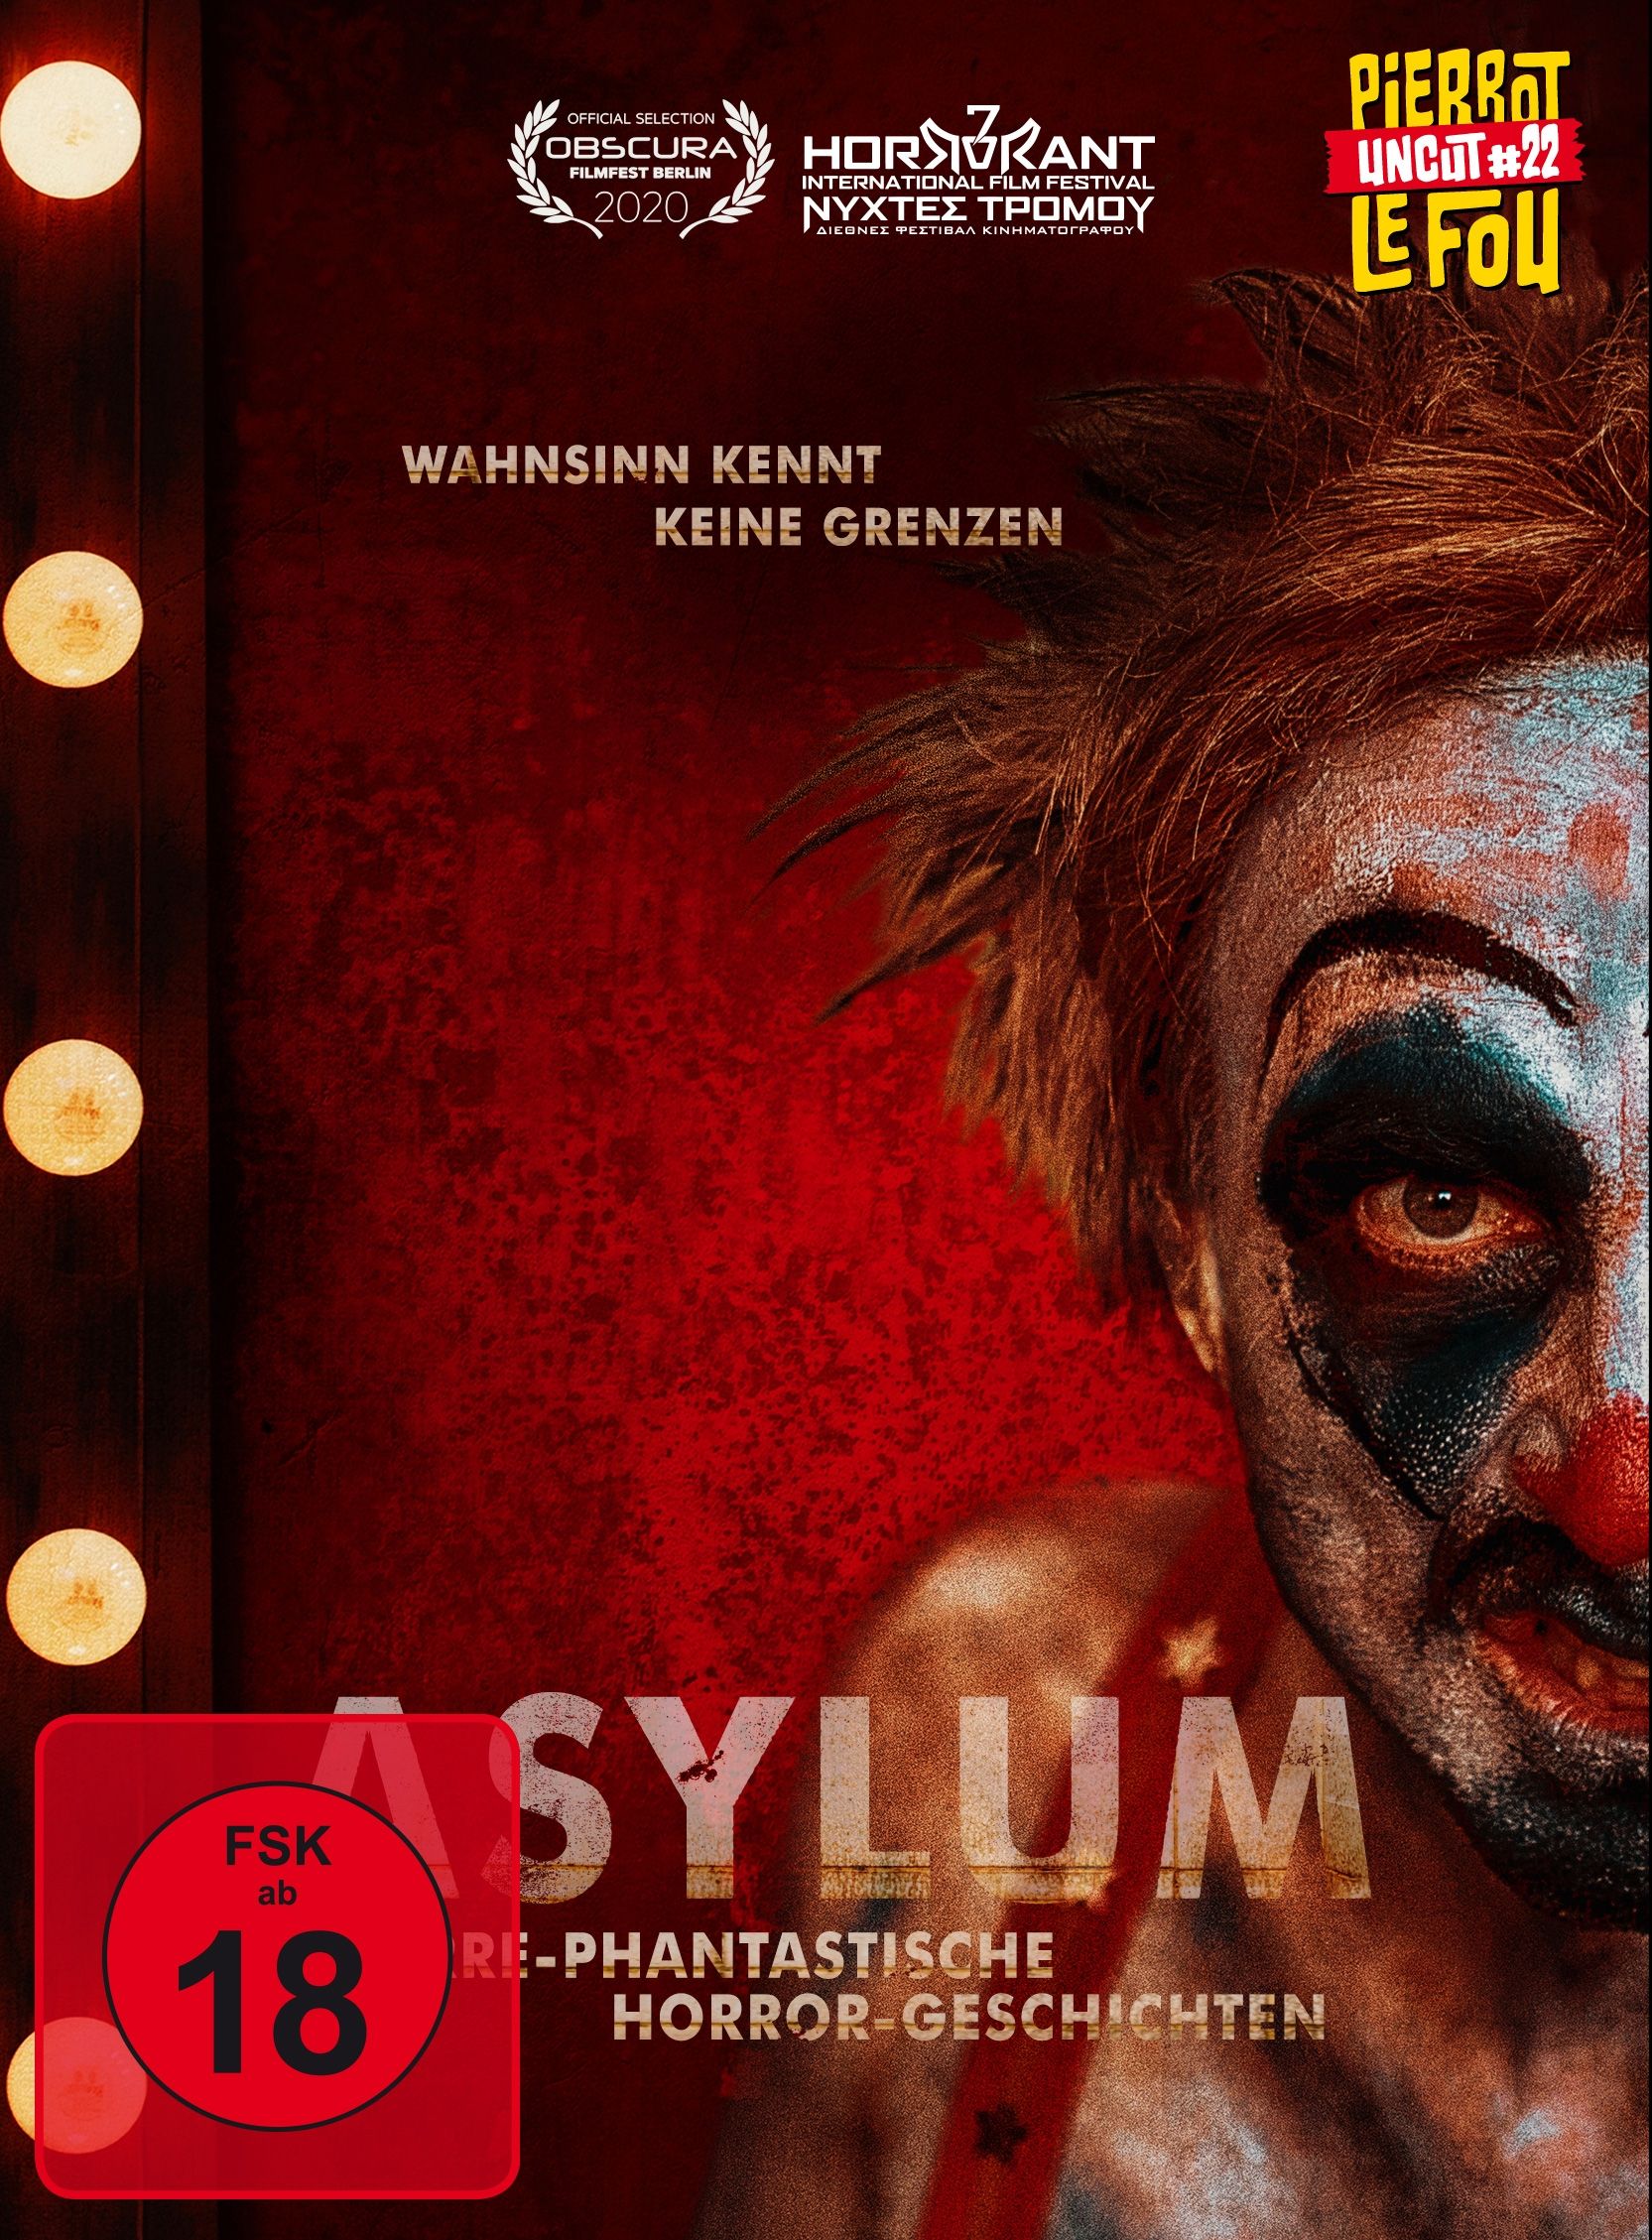 Asylum - Irre-phantastische Horror-Geschichten (Lim. Uncut Mediabook - Cover A) (DVD + BLURAY)